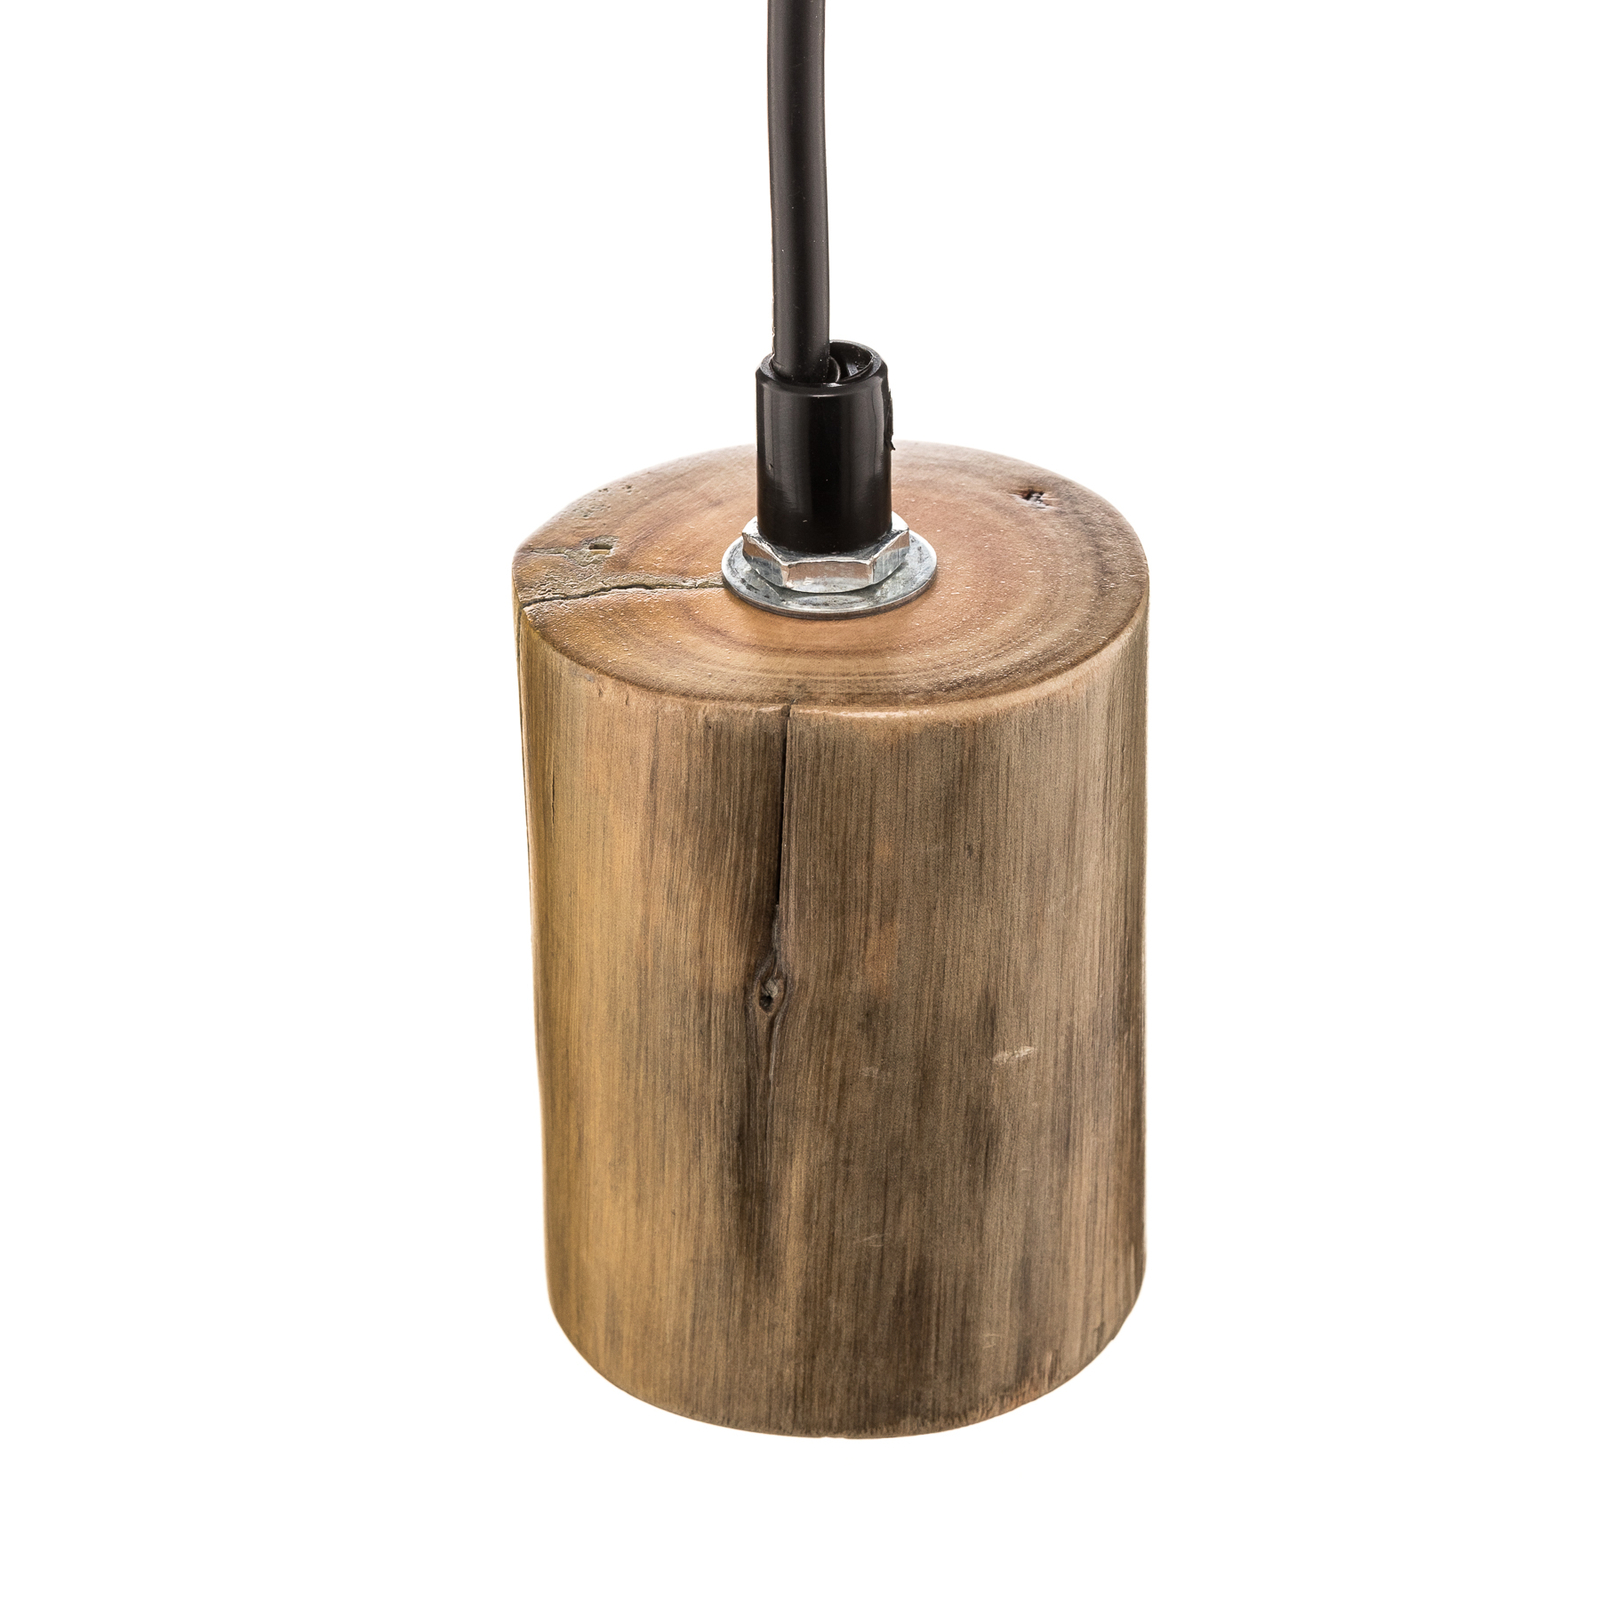 Tronco pendant light, 1-bulb, wooden pendant 8 cm